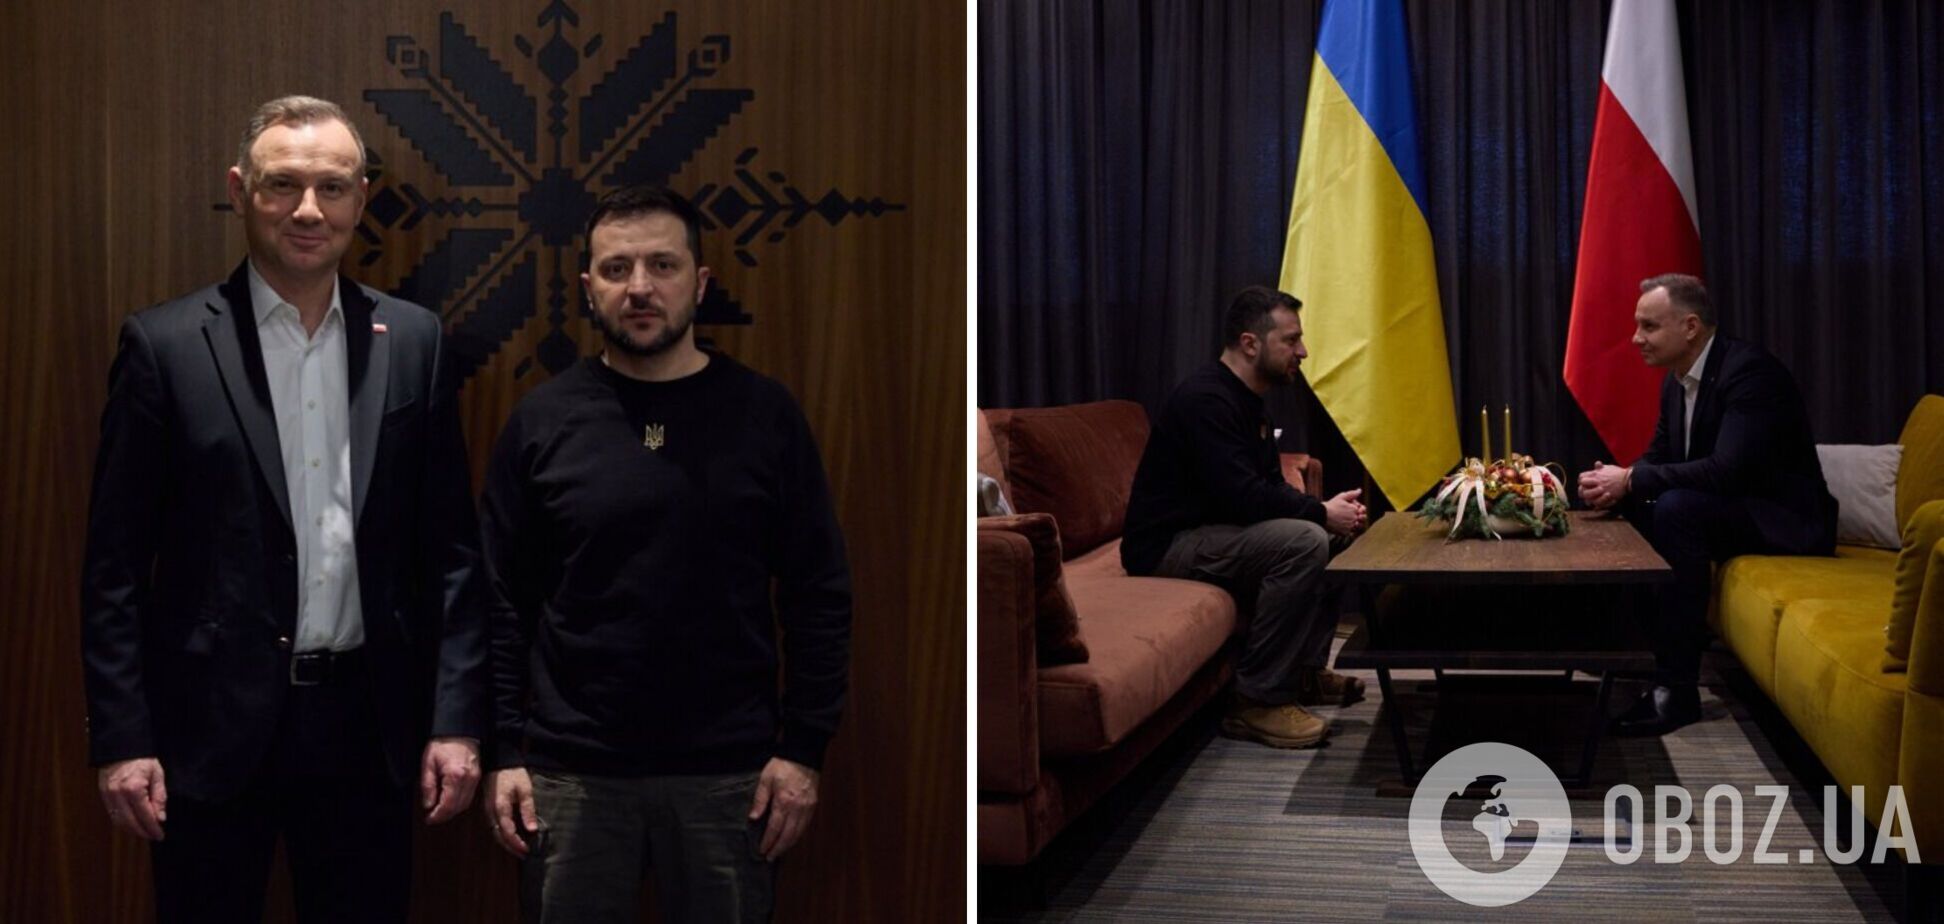 Зеленский по пути в Украину провел встречу с президентом Польши Дудой. Видео